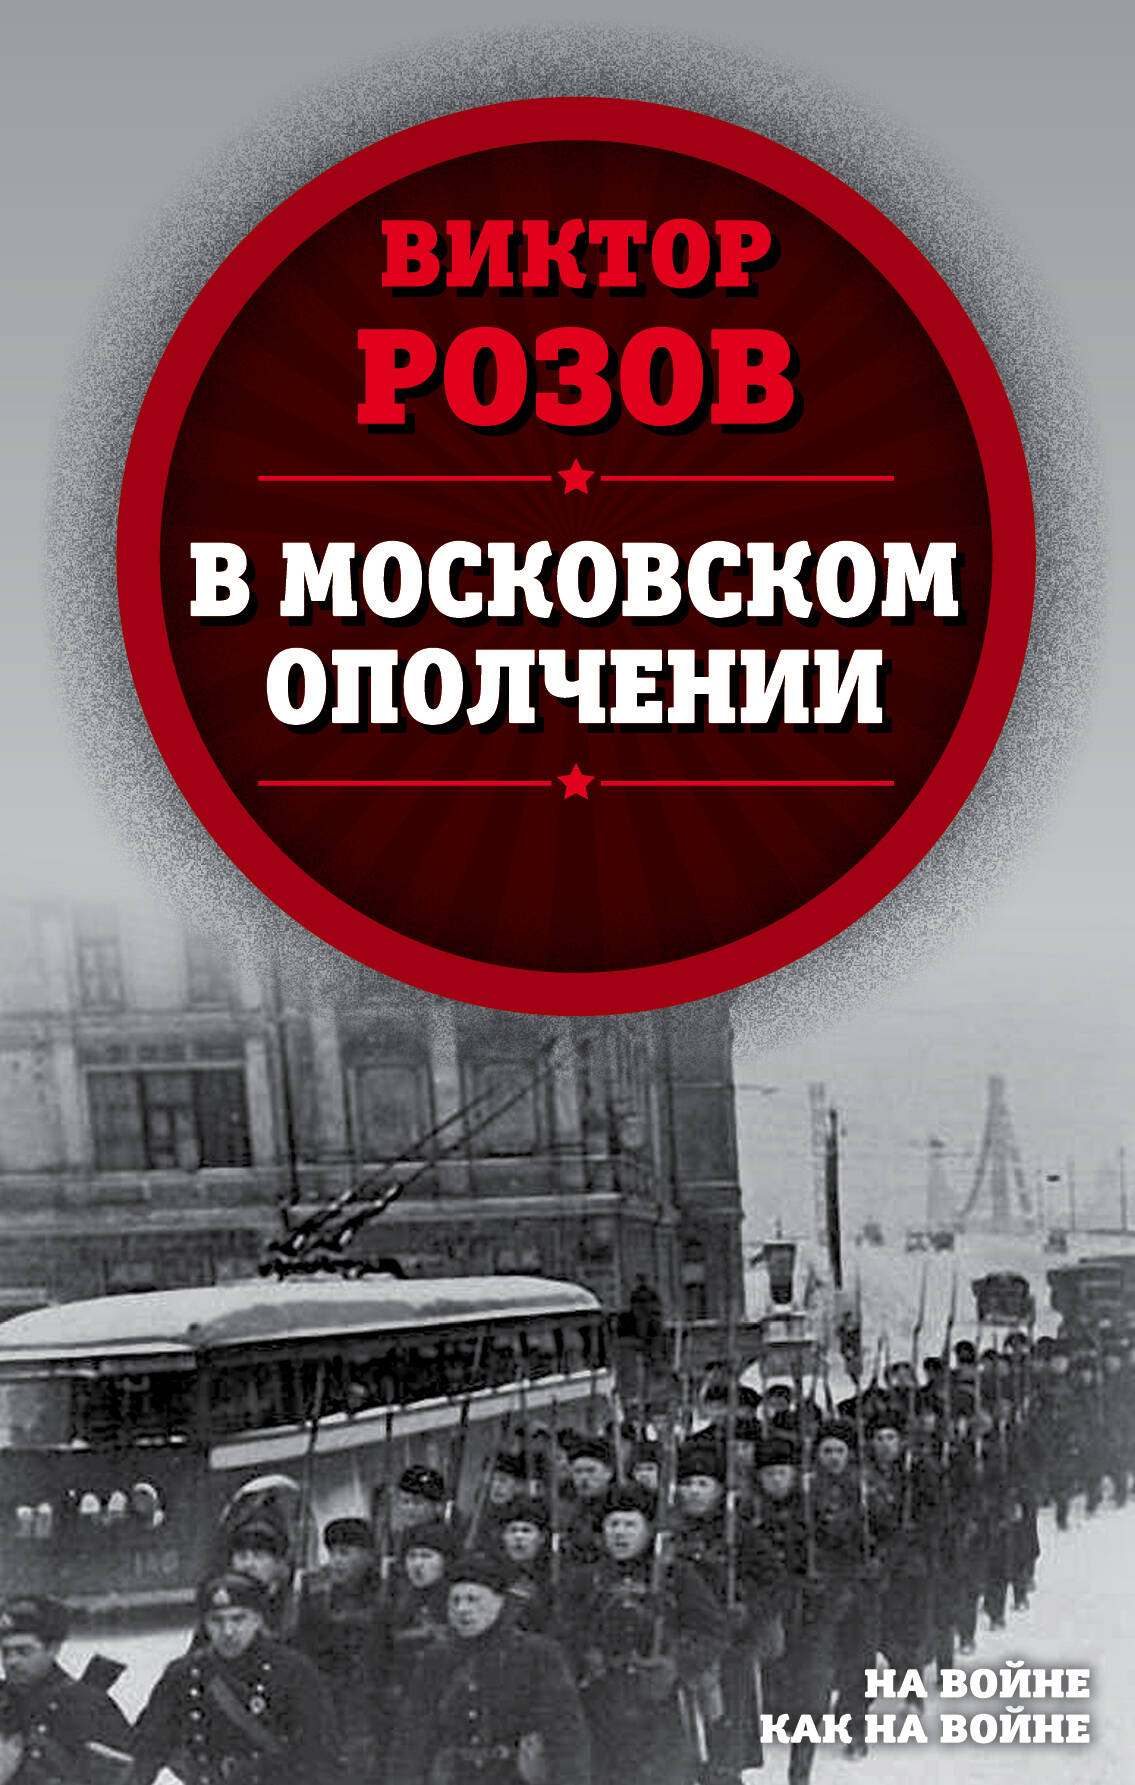 В московском ополчении анфилов виктор загадка 1941 года о войне под разными ракурсами